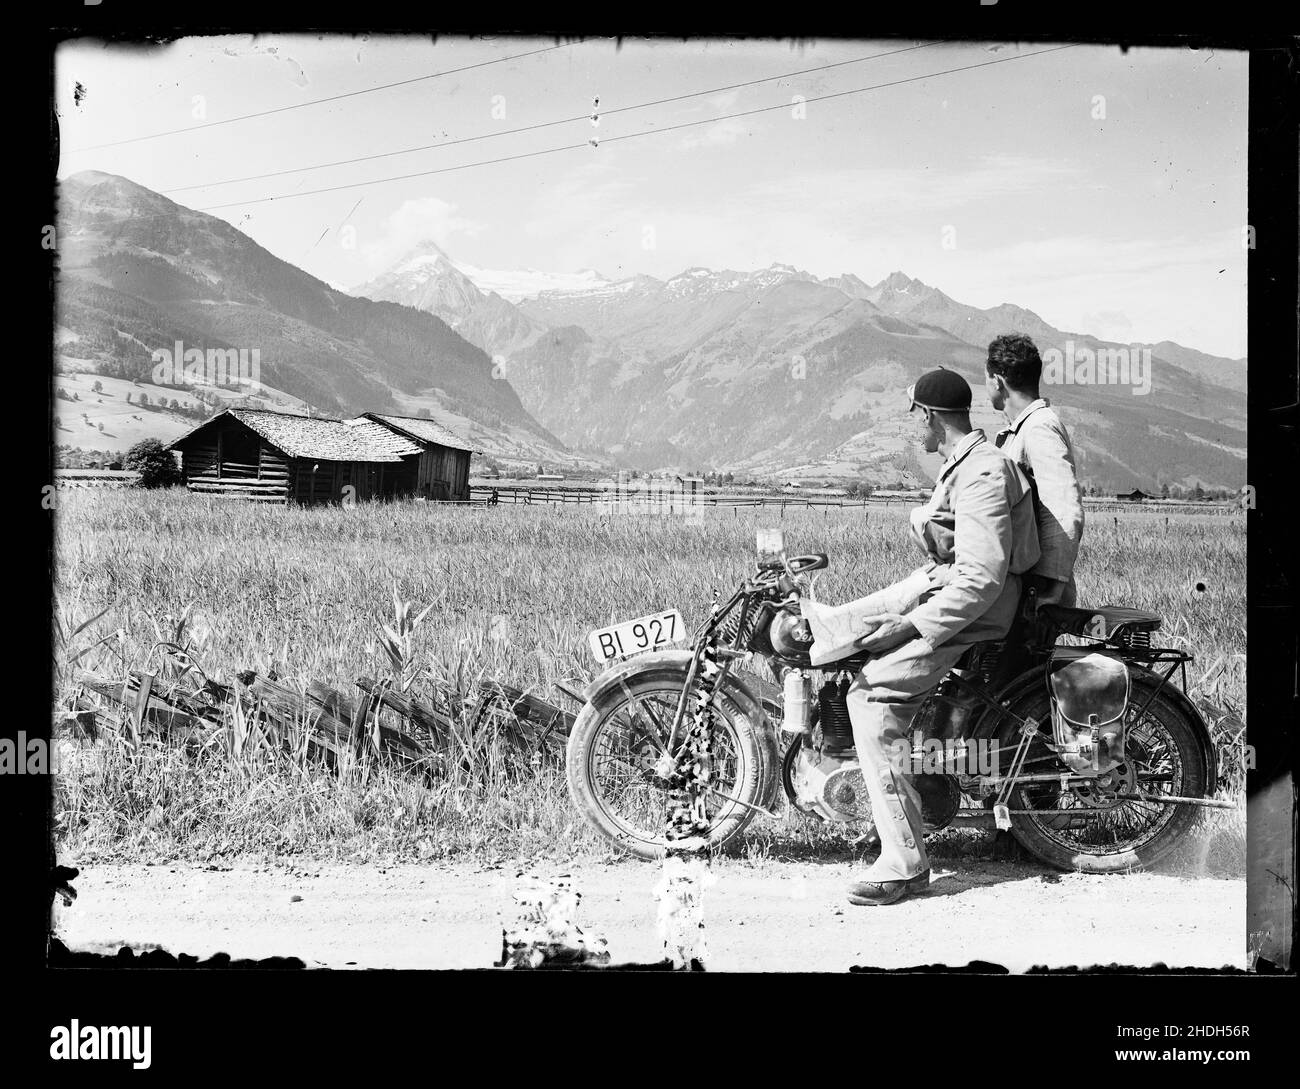 Junger Mann, Motorrad, europäische alpen, historisches Foto, Kerl, Mann,  Männer, jung, Motorrad, Motorräder, Motorräder, historische Fotos  Stockfotografie - Alamy